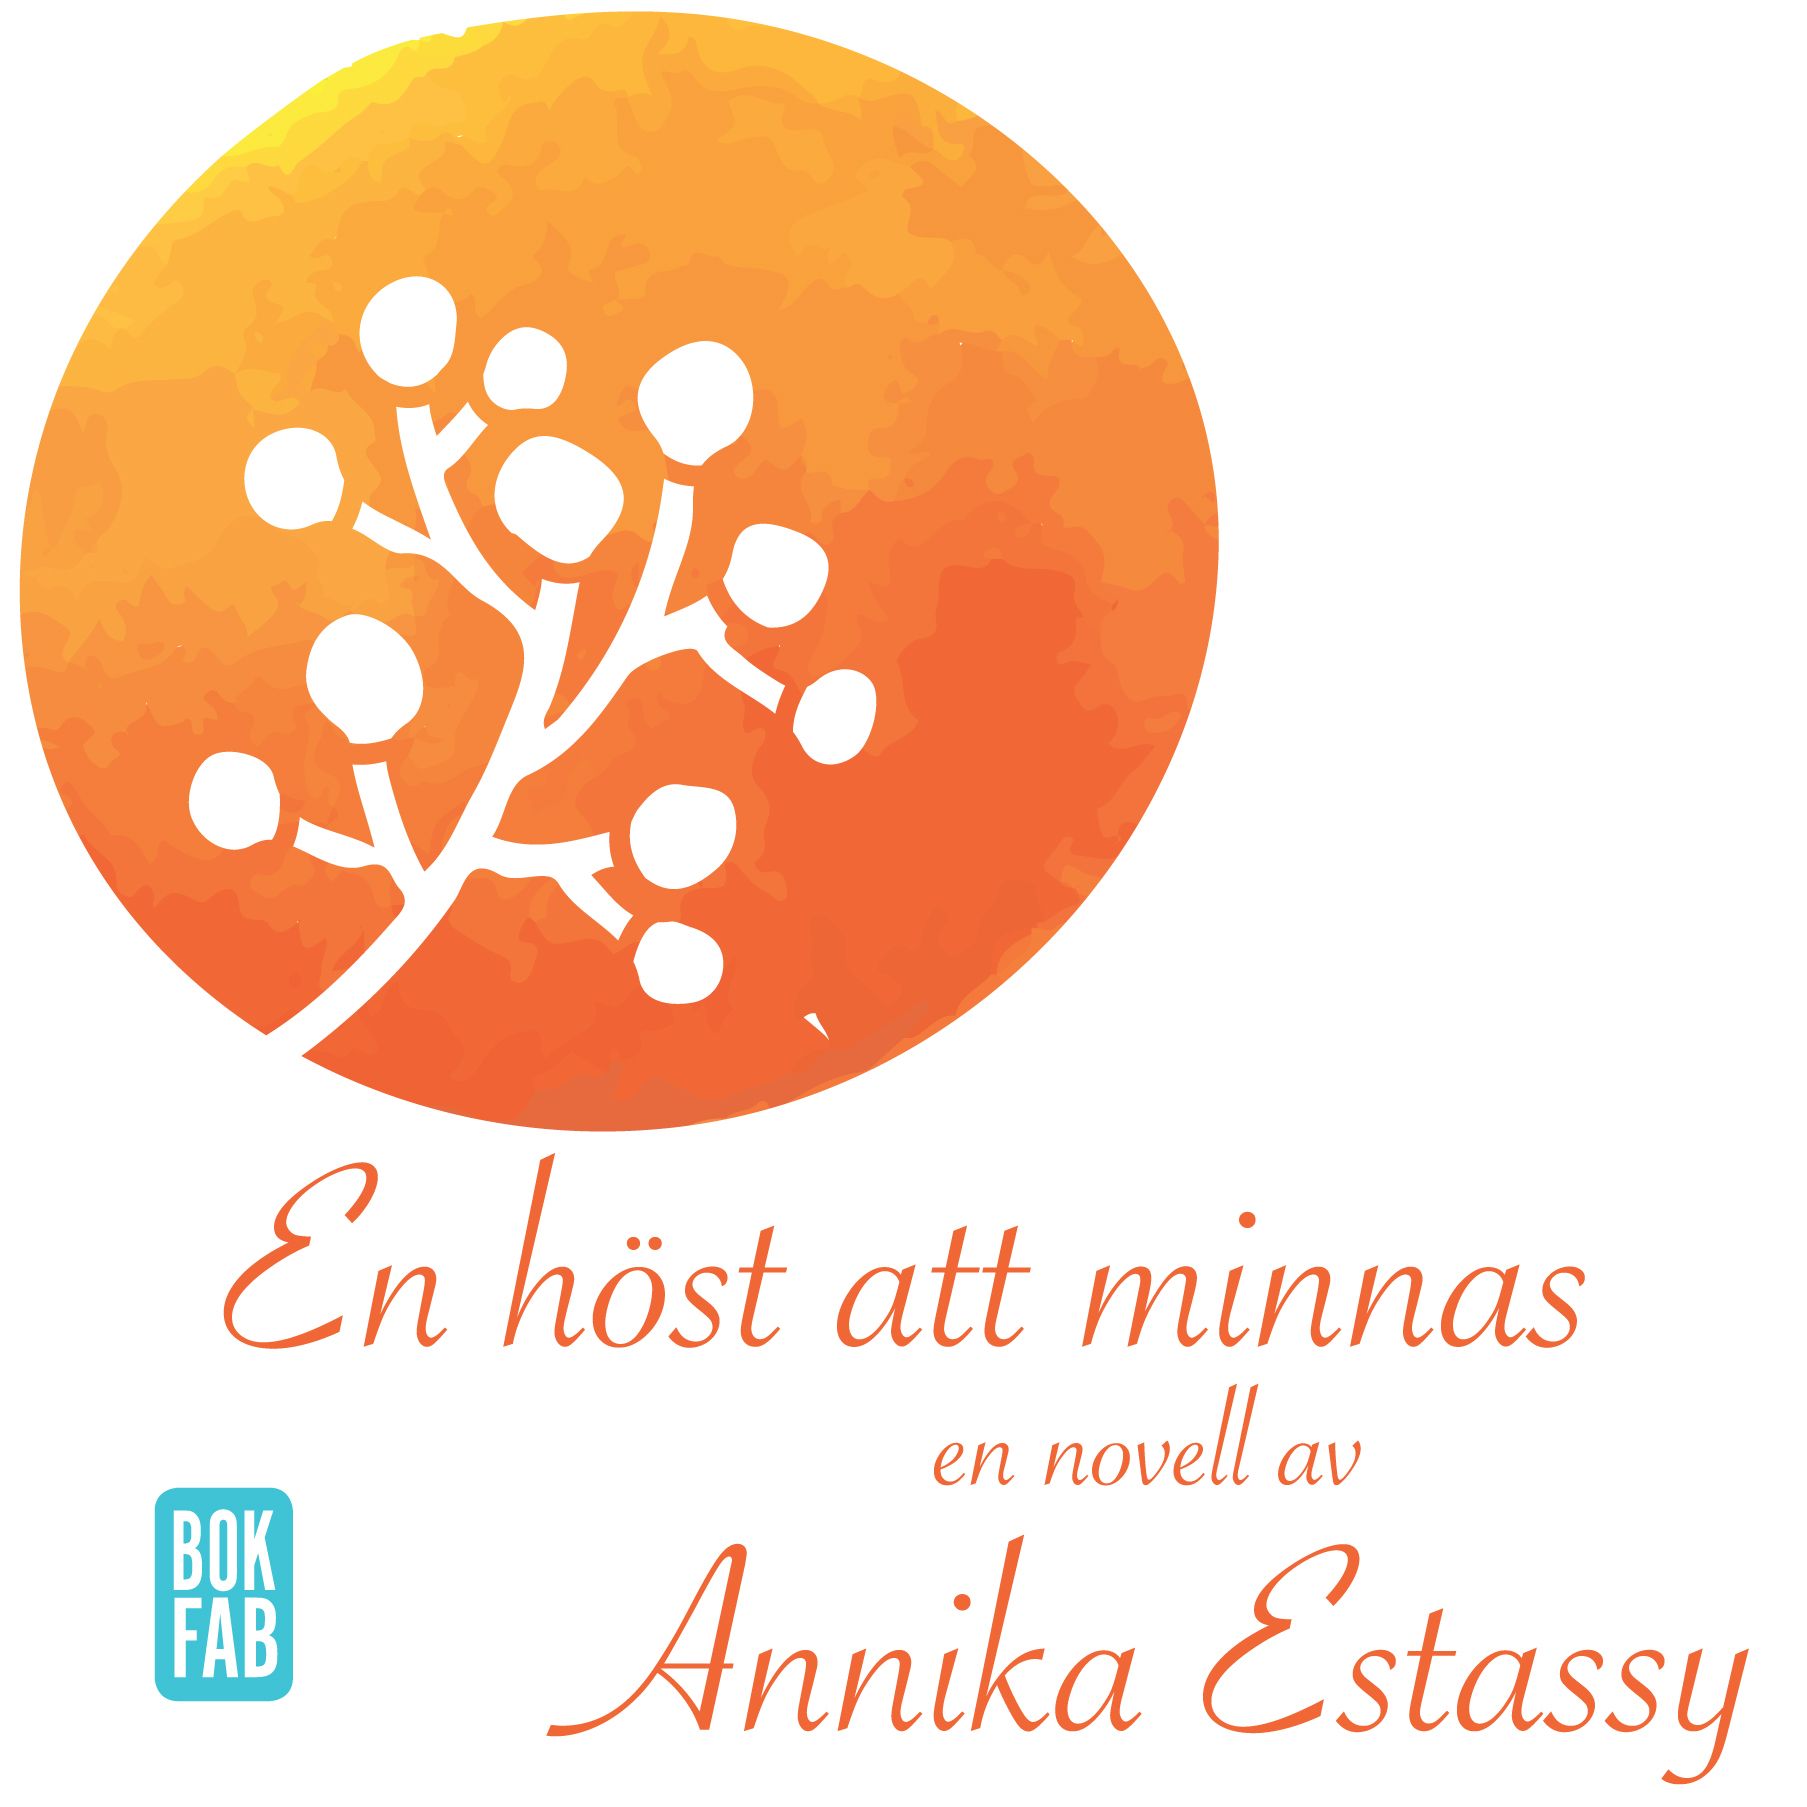 En höst att minnas, audiobook by Annika Estassy